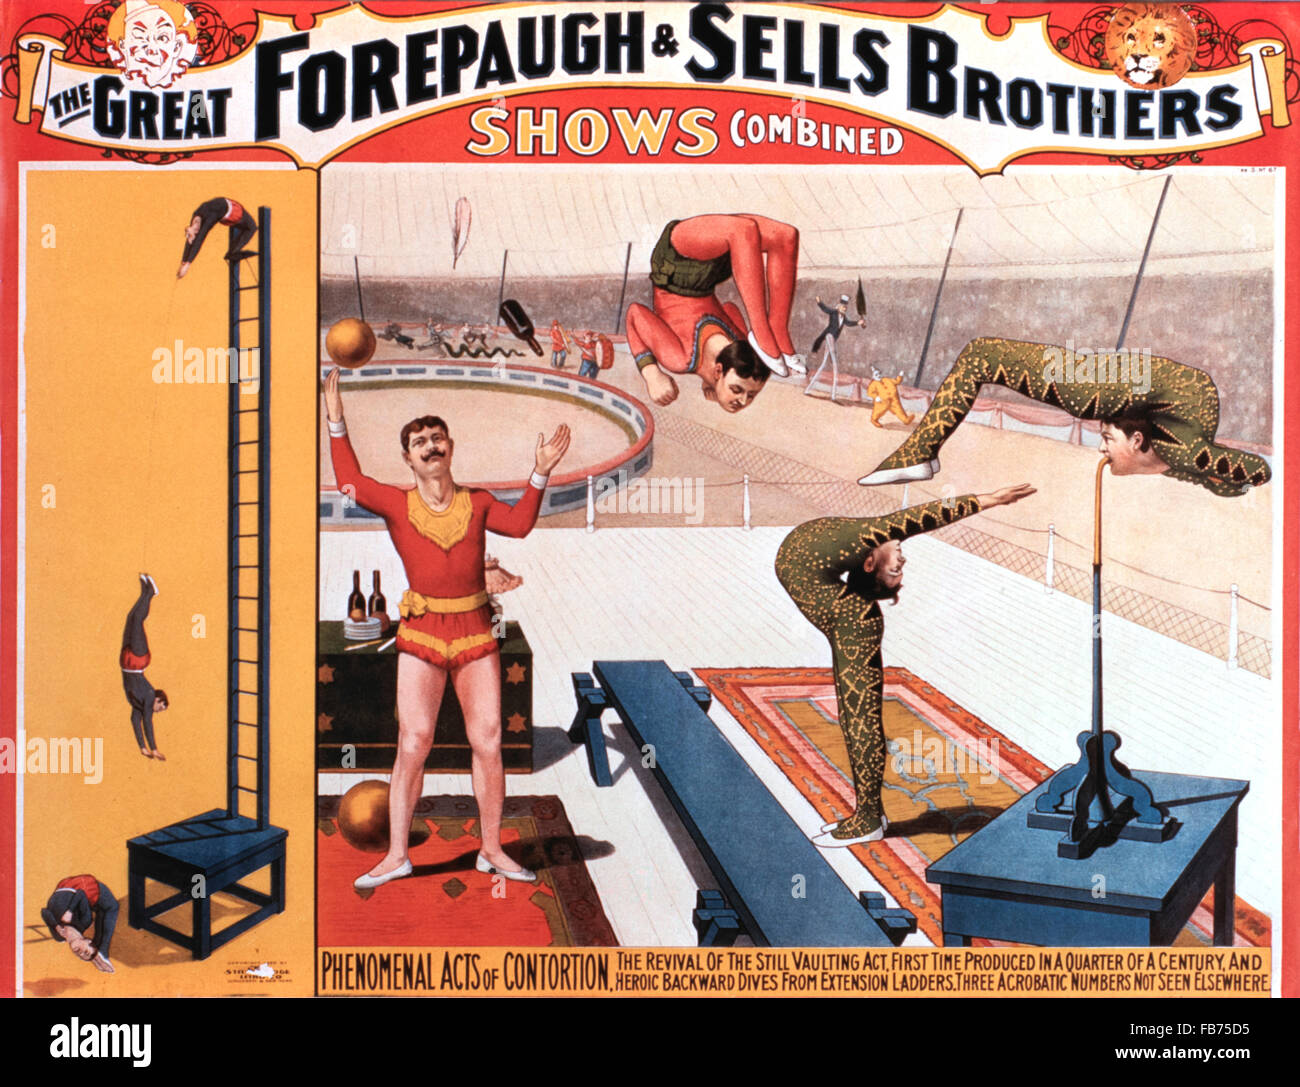 Grand Forepaugh et vend des Frères montre combinés, actes de contorsion phénoménale, vers 1900, l'affiche de cirque Banque D'Images